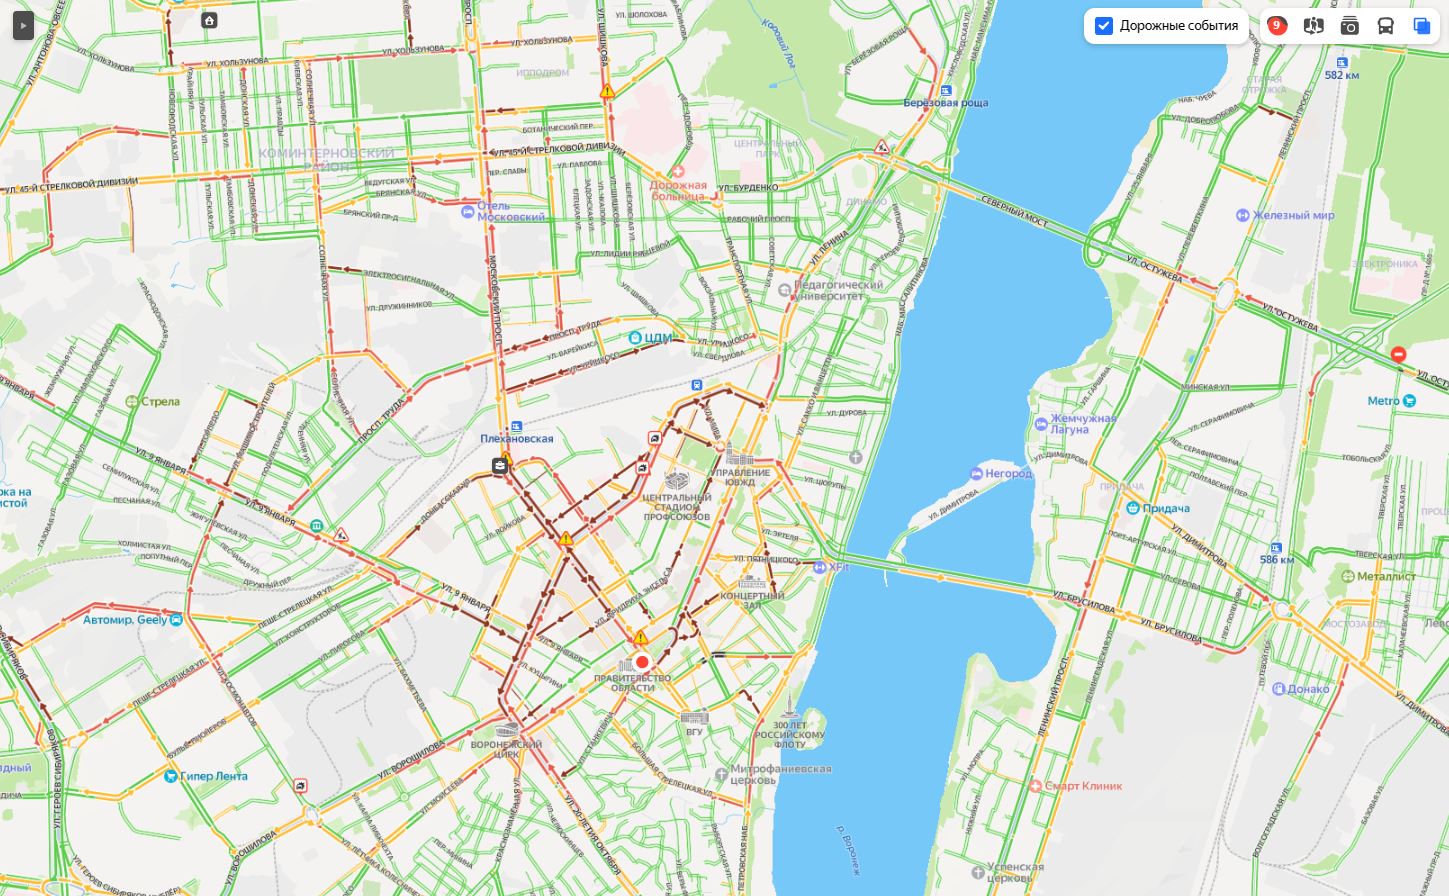 yandex.ru/maps